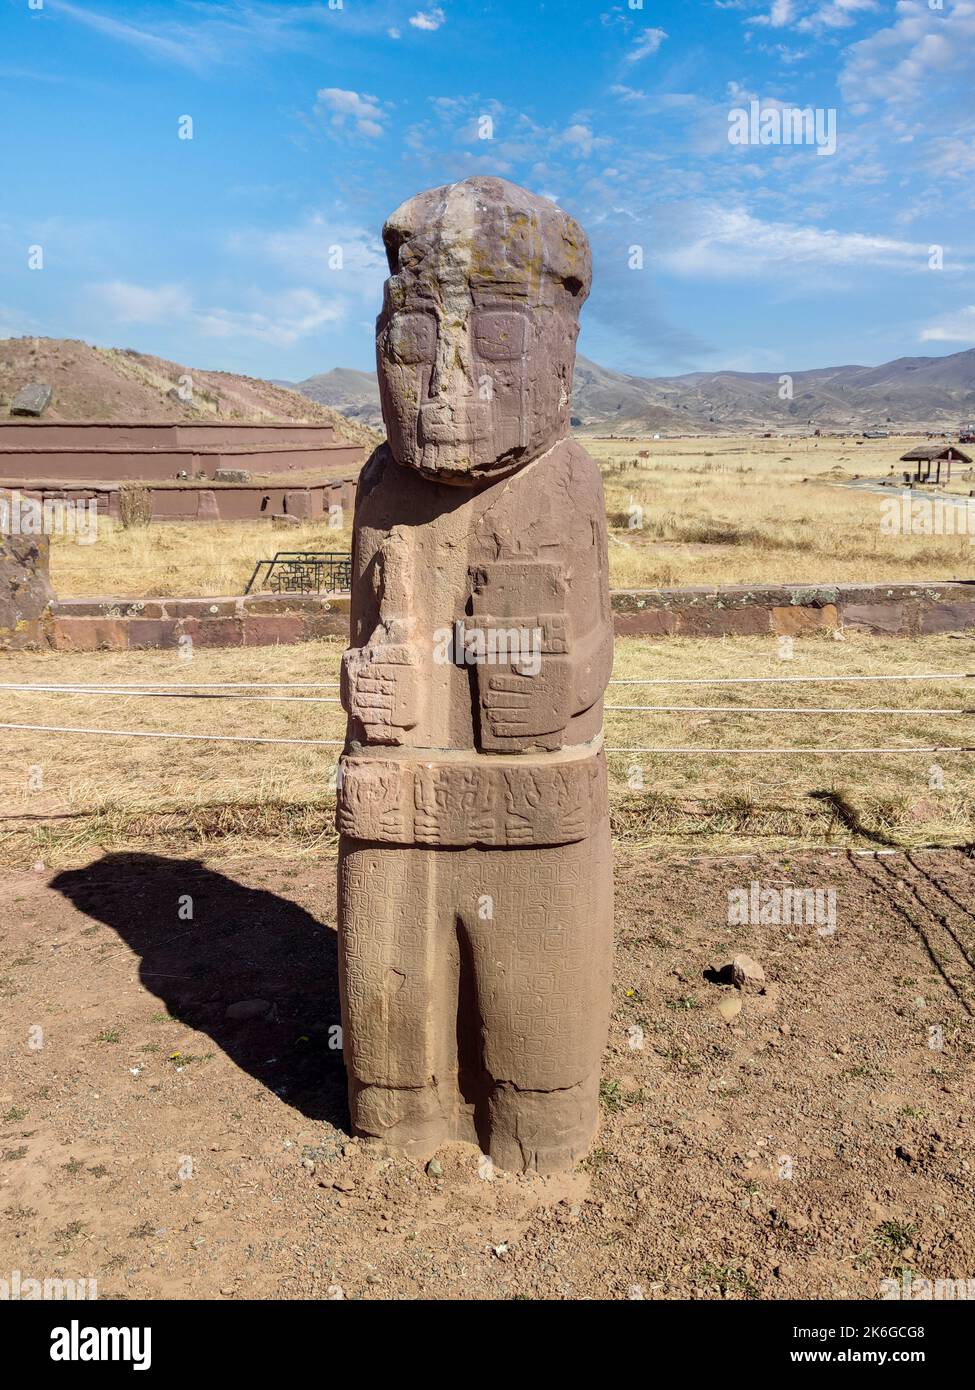 Monolith Fraile, ein altes Artefakt, das in Sandsteinkörner von 3 m Höhe geschnitzt wurde, in Tiwanaku oder Tiahuanaco präkolumbianischen archäologischen Stätten in Bolivien. Stockfoto